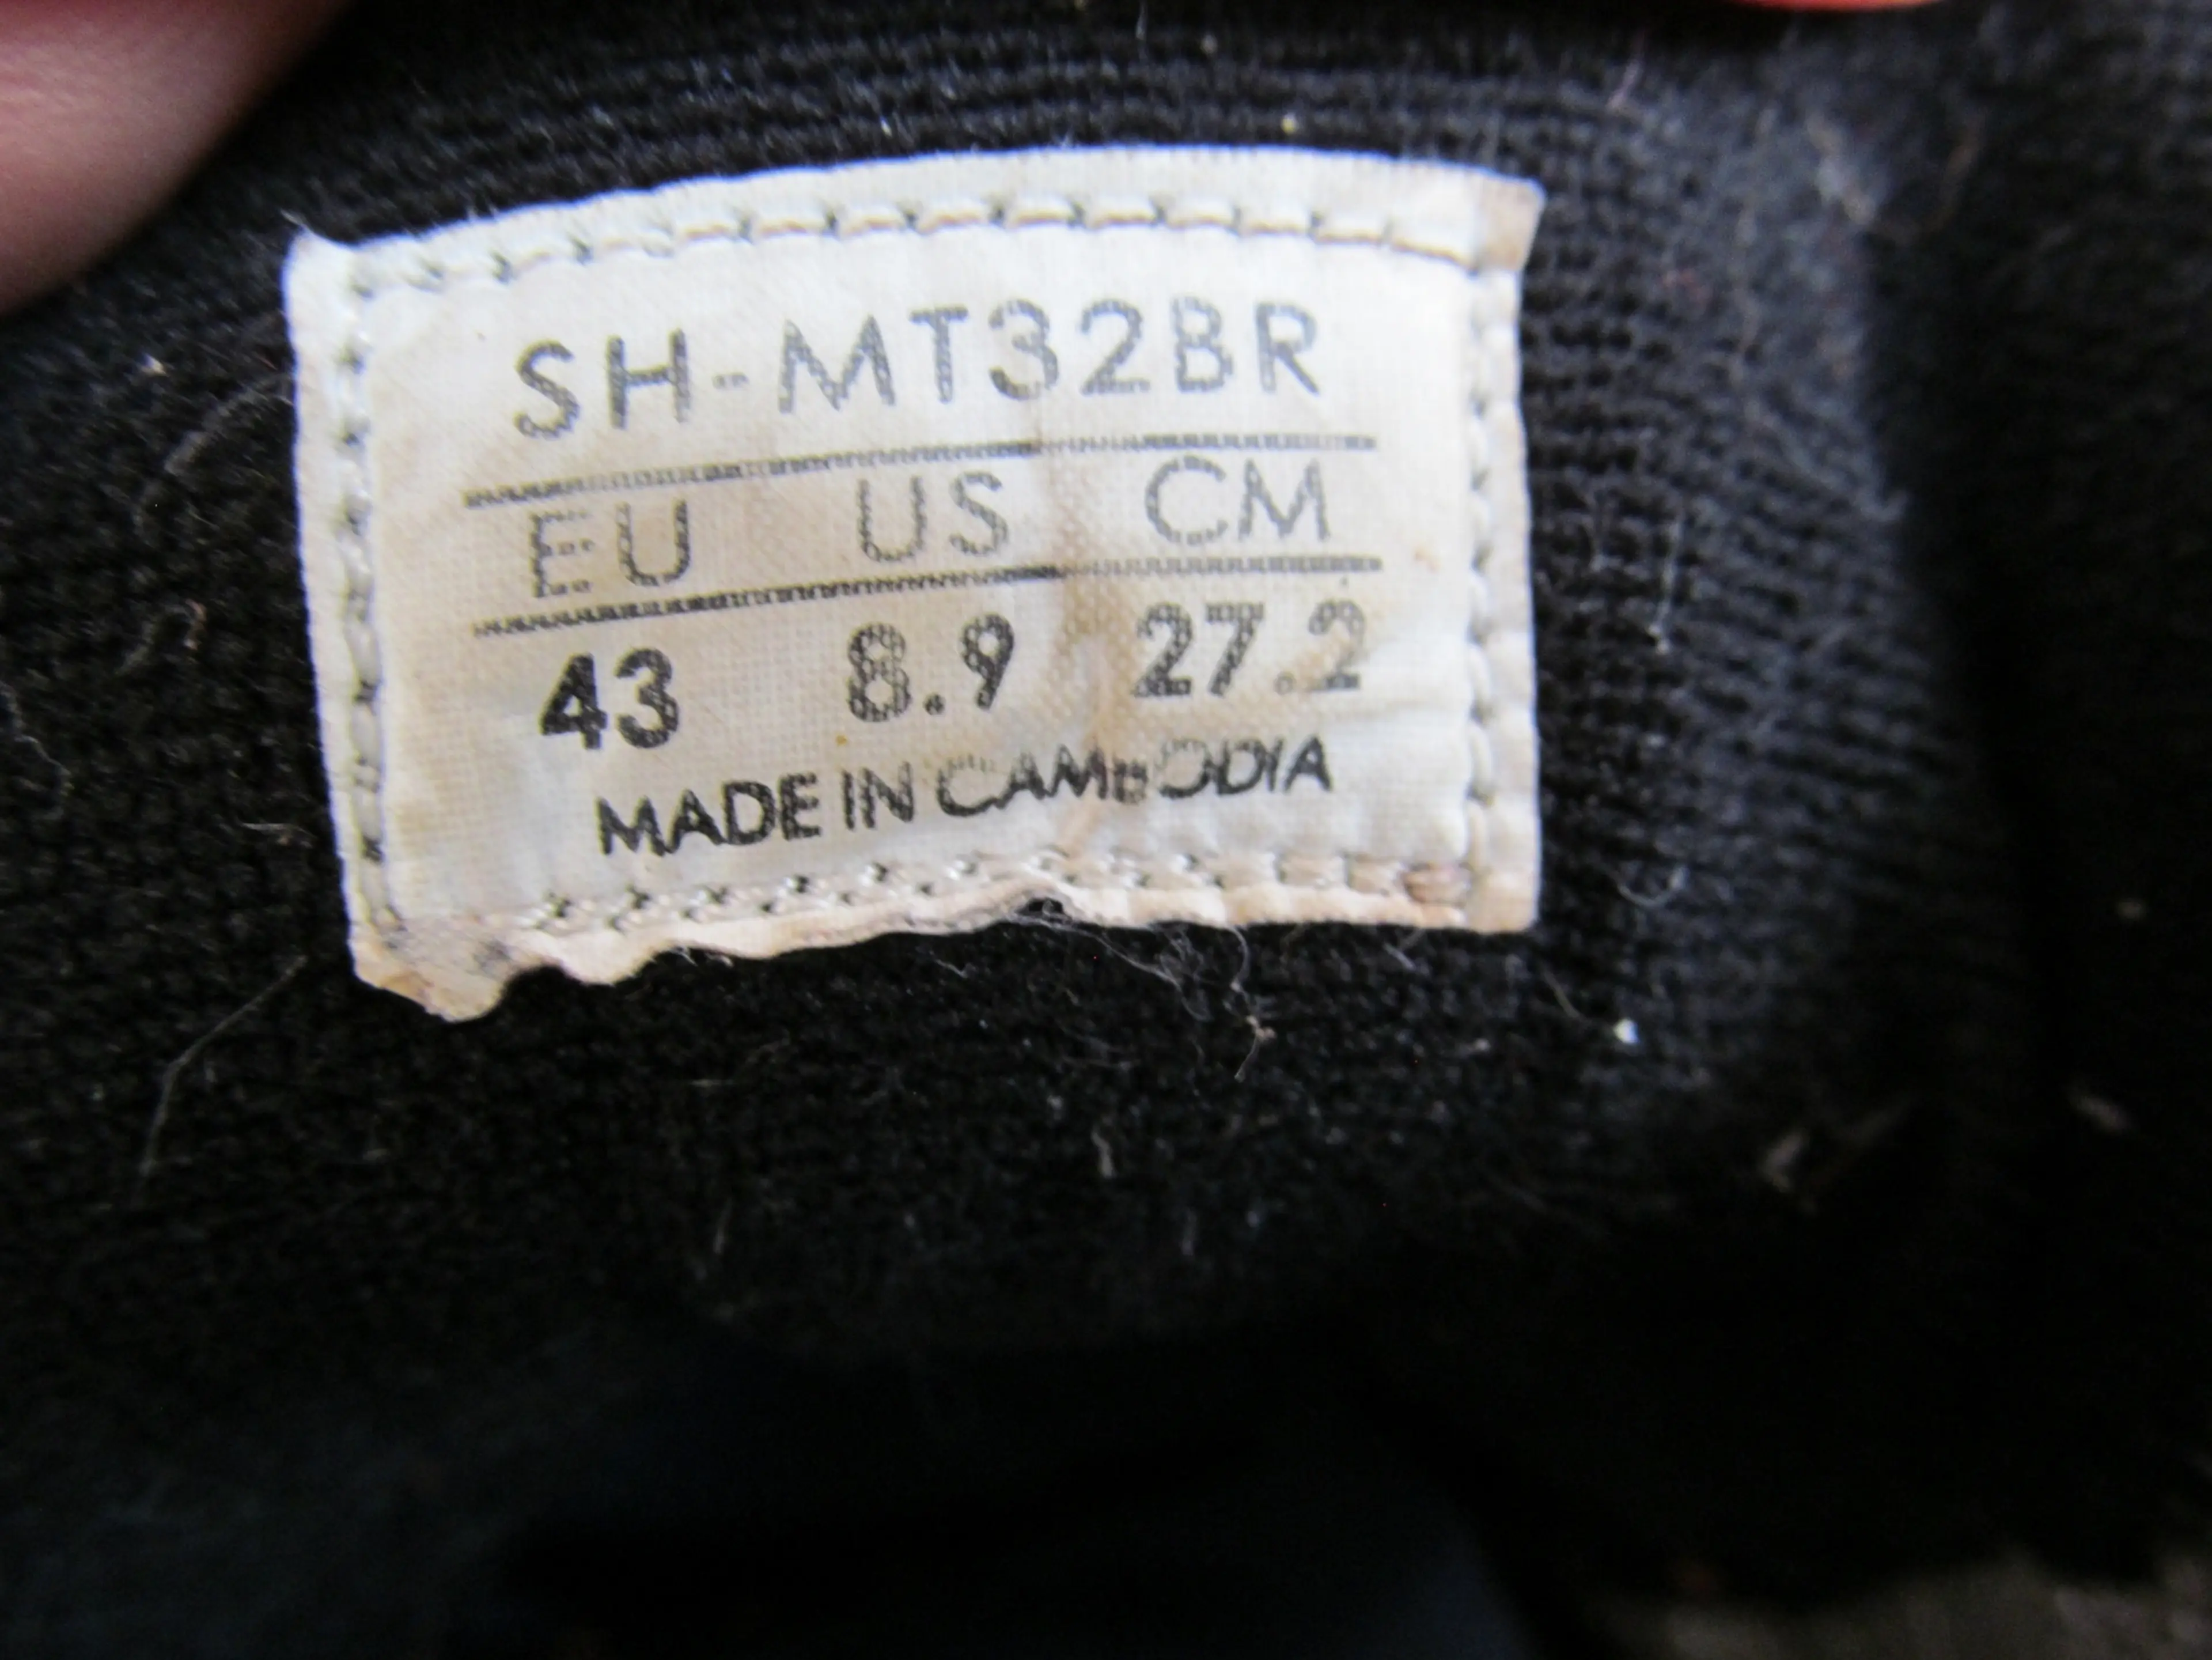 3. Pantofi Shimano SH-MT32BR nr 43, 27.2 cm